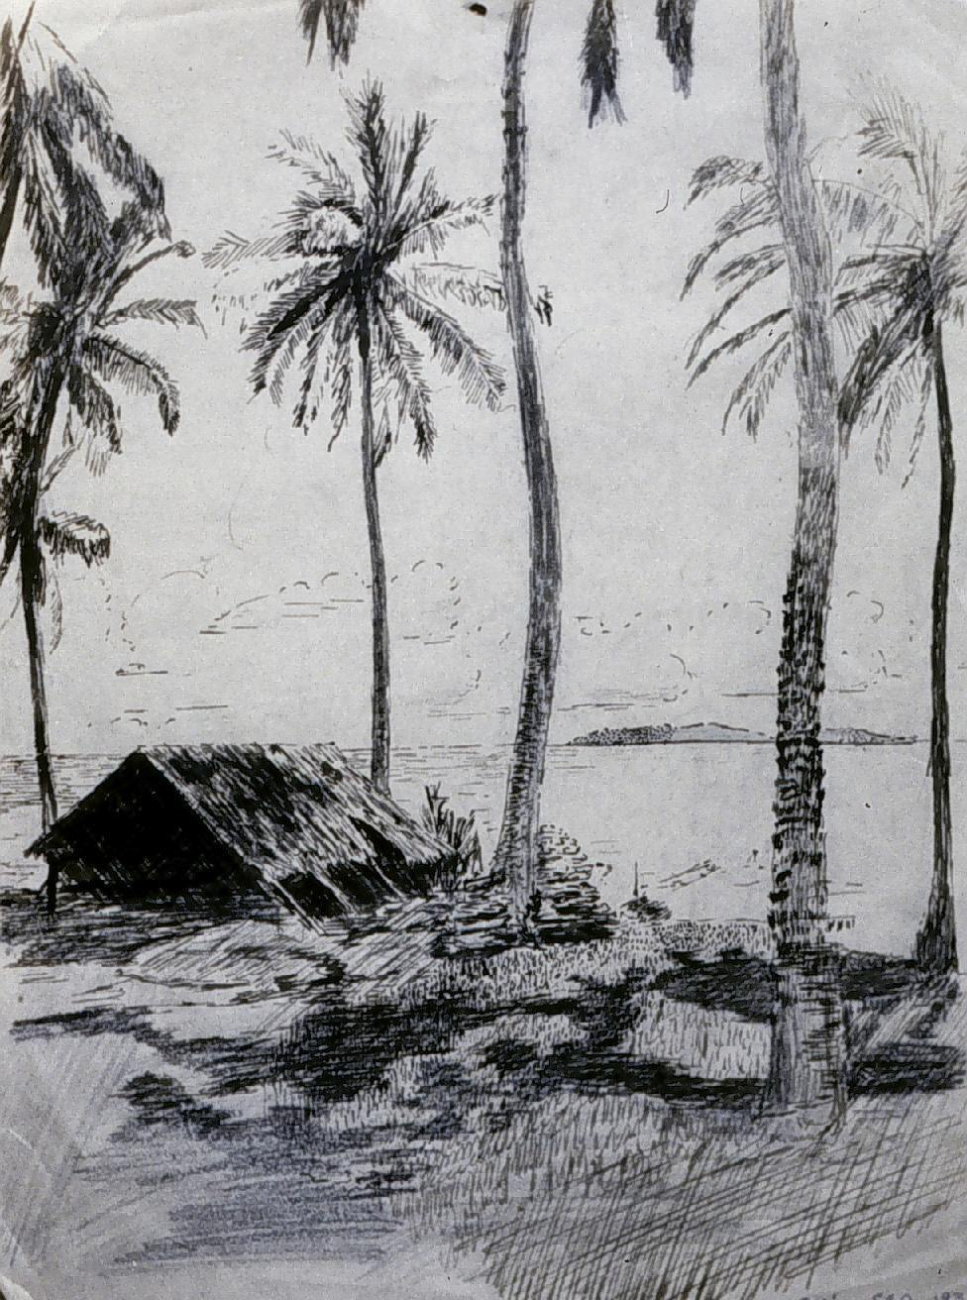 Sketch of a Coast Survey camp site